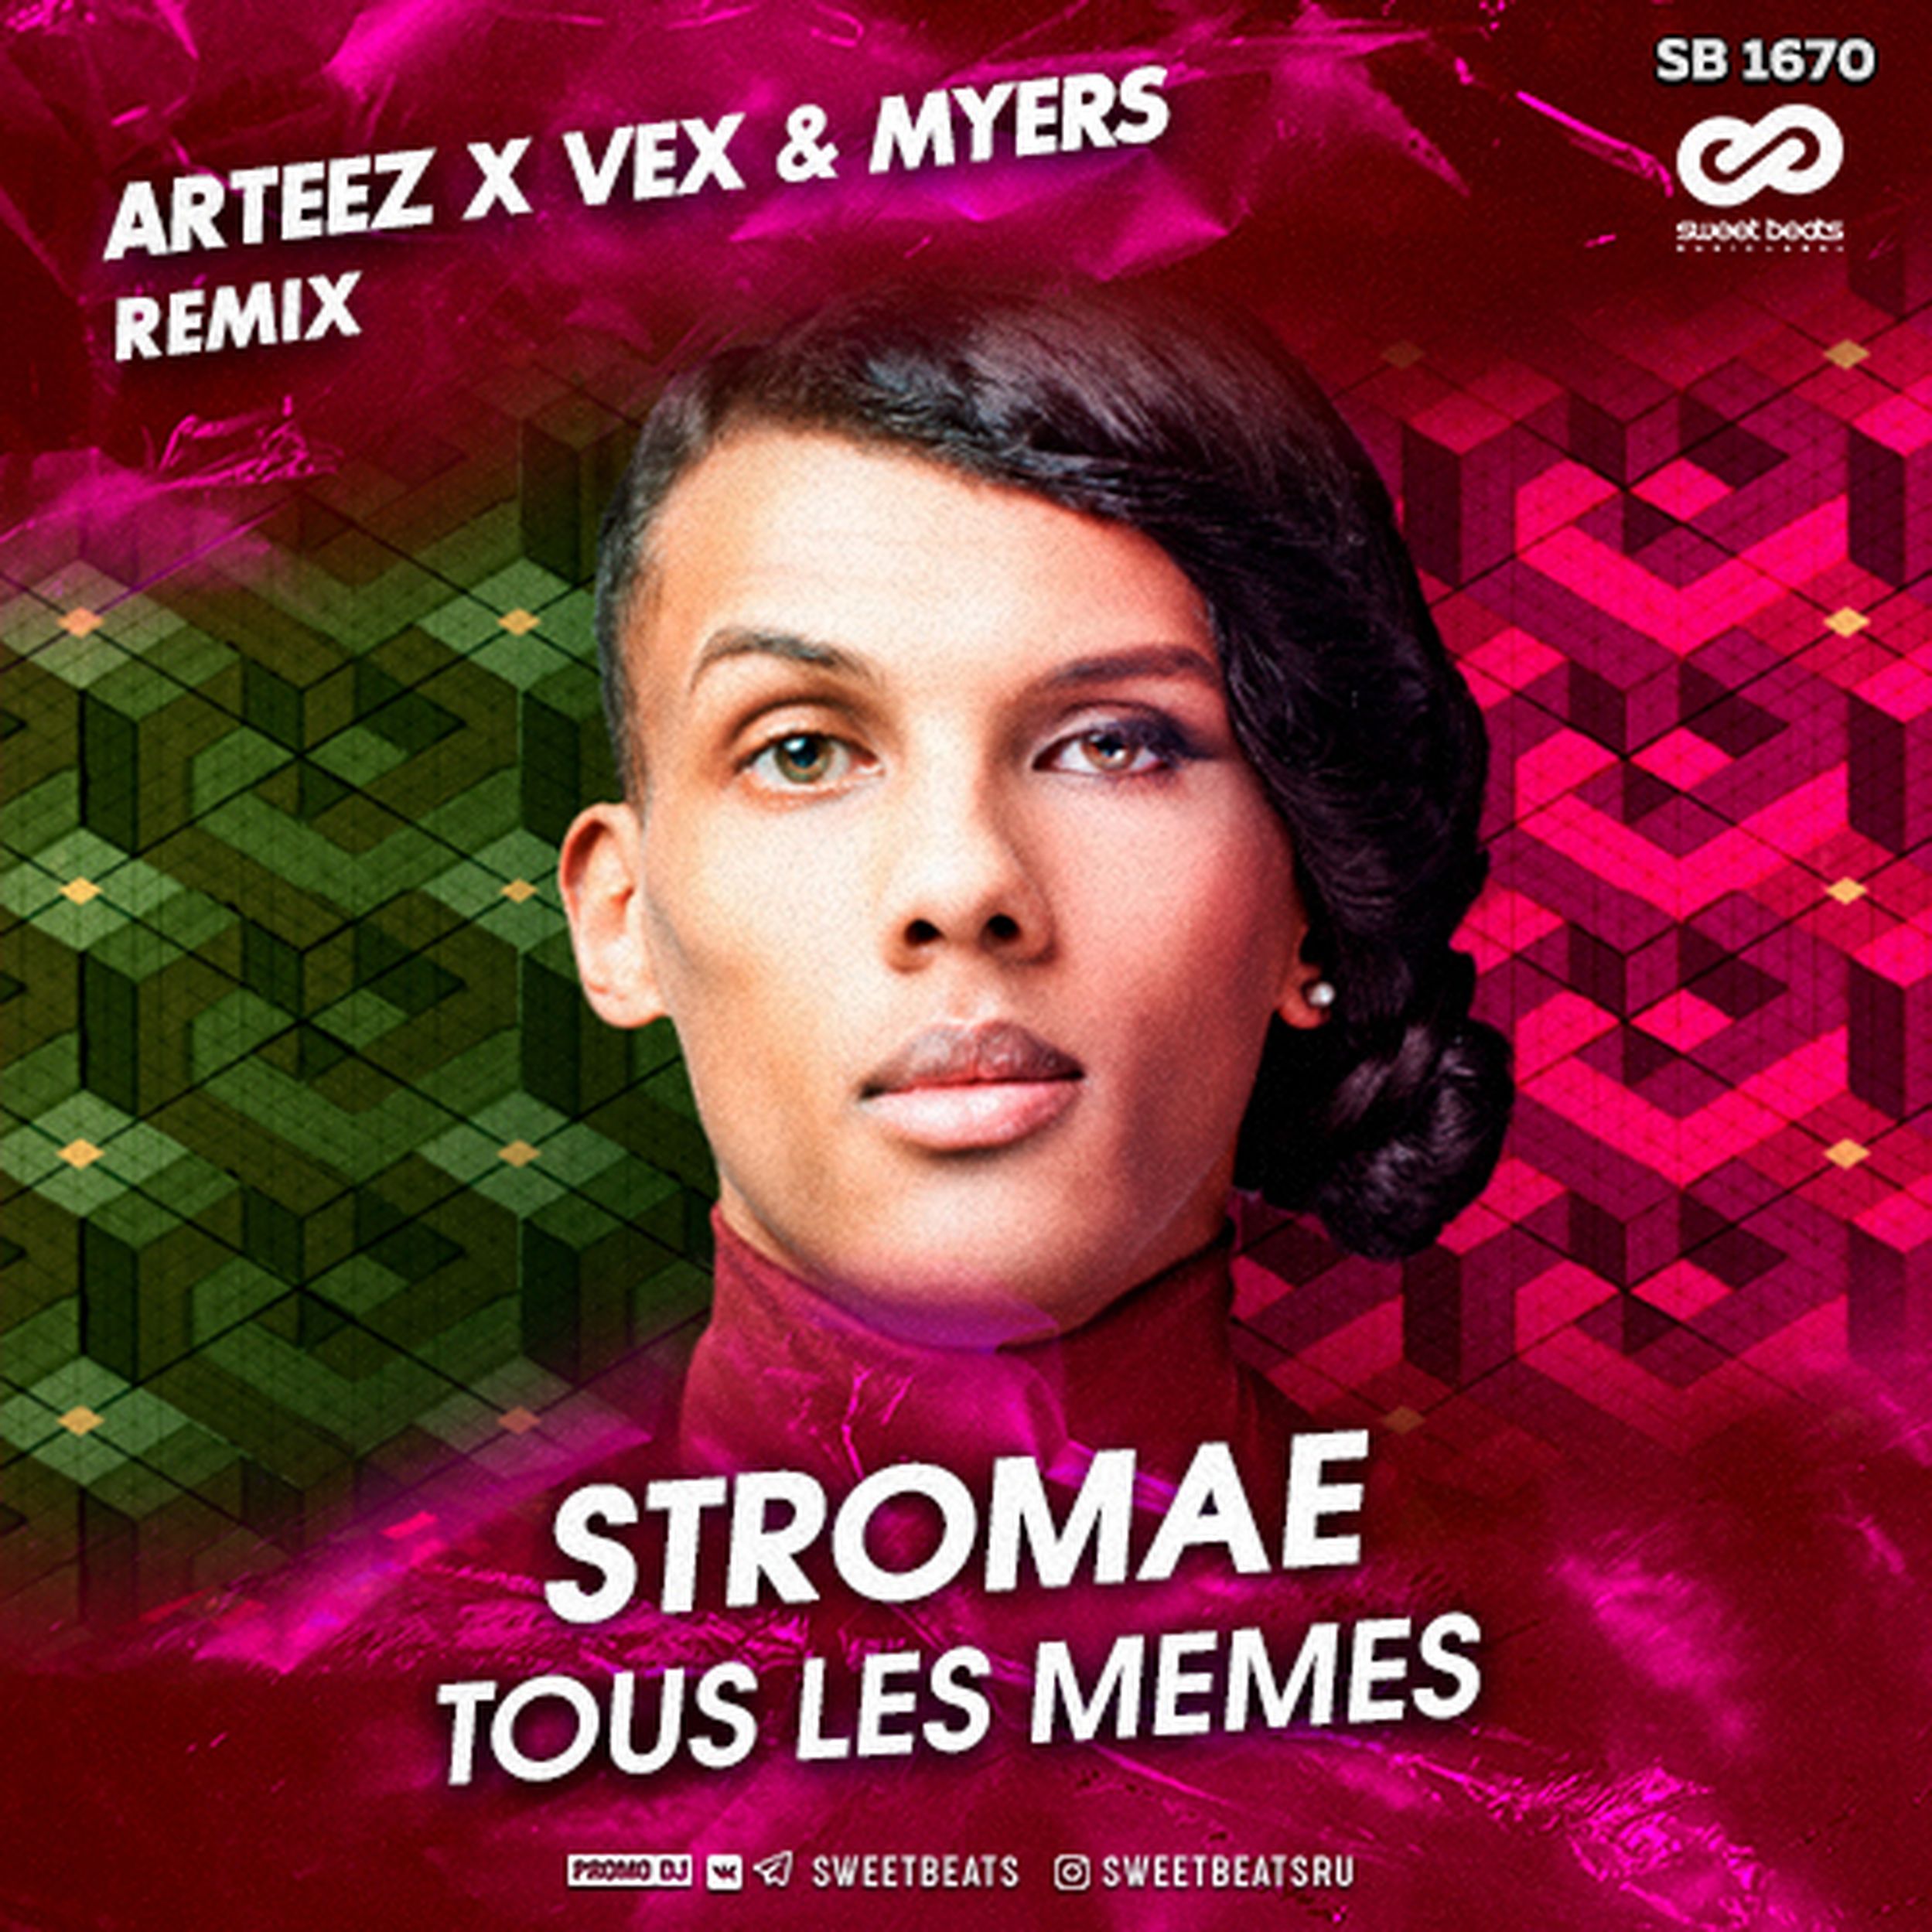 Stromae песня tous les memes. Стромае tous les memes. Стромае Рандеву. DJ ARTEEZ. Tous les mêmes от Stromae.